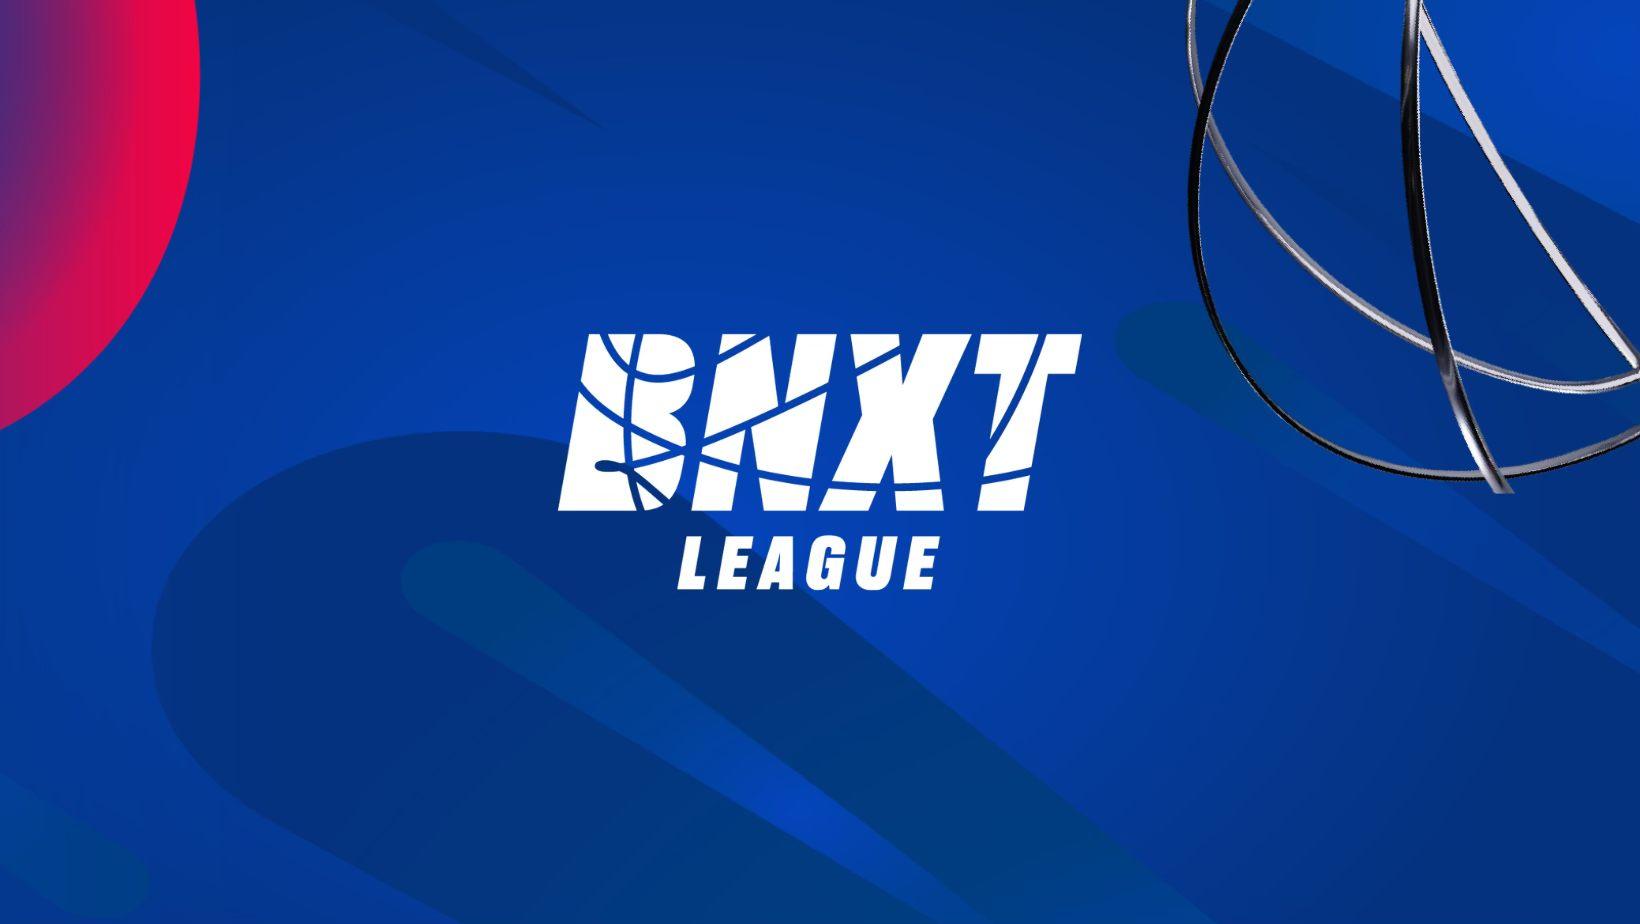 Une BNXT league à 20 clubs en aller-retour en 2024-2025